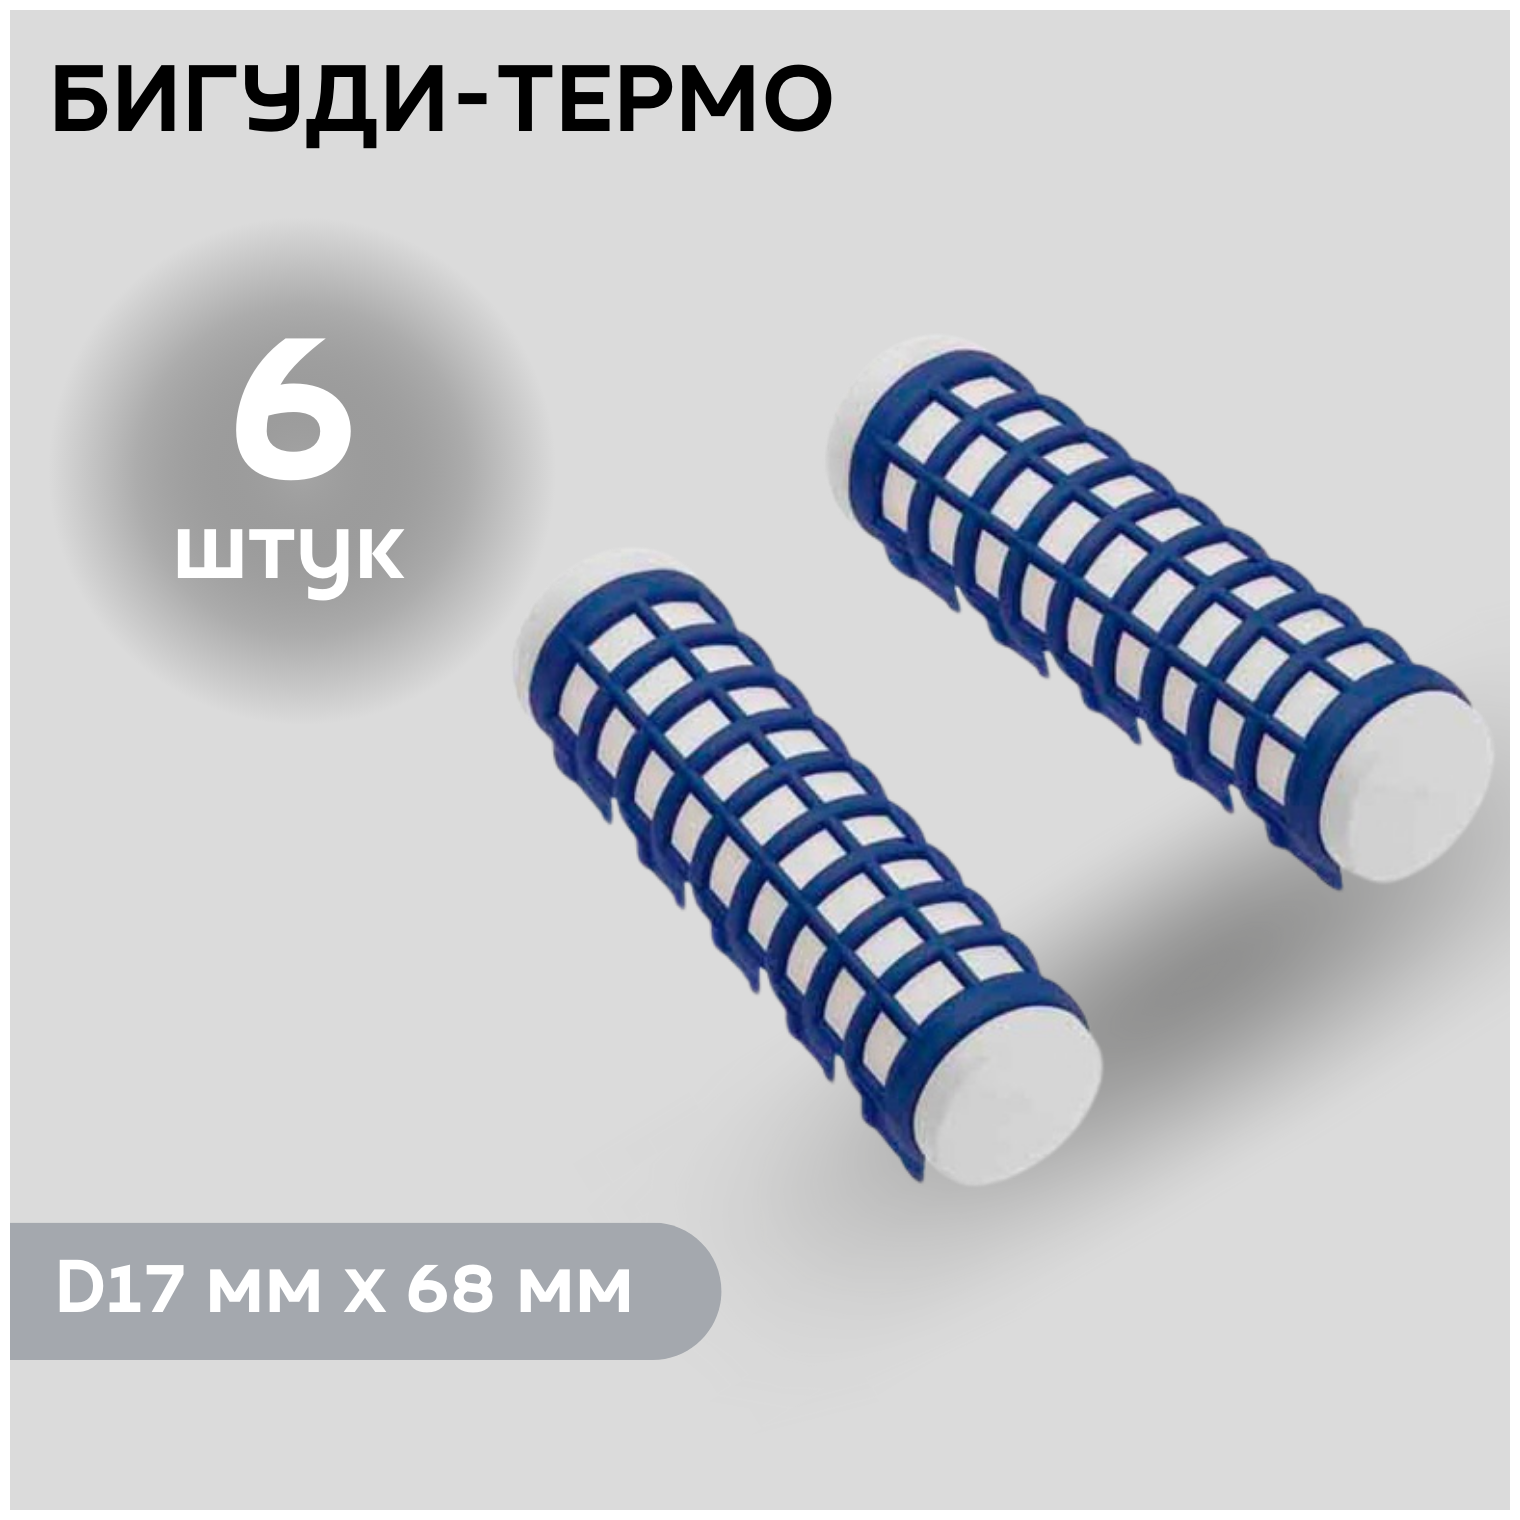 DEWAL BEAUTY Бигуди термо DBTR17, синие, d 17 мм x 68 мм, 6 шт.